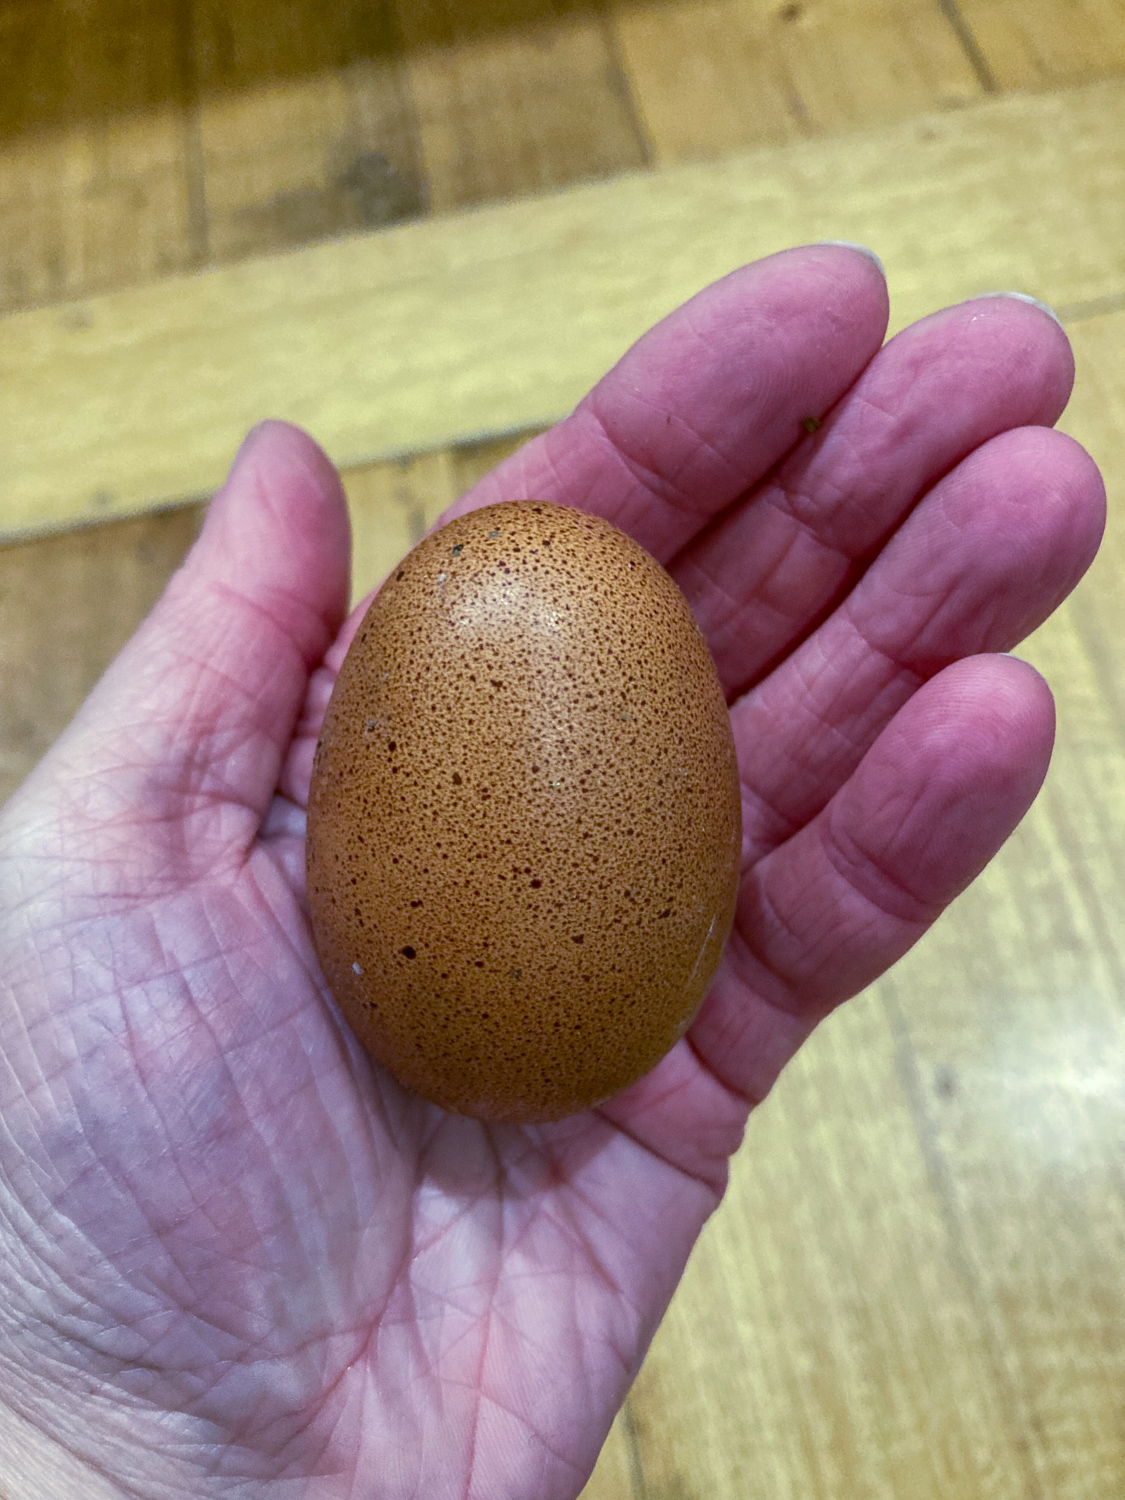 My left hand holding a dark brown speckled chicken egg